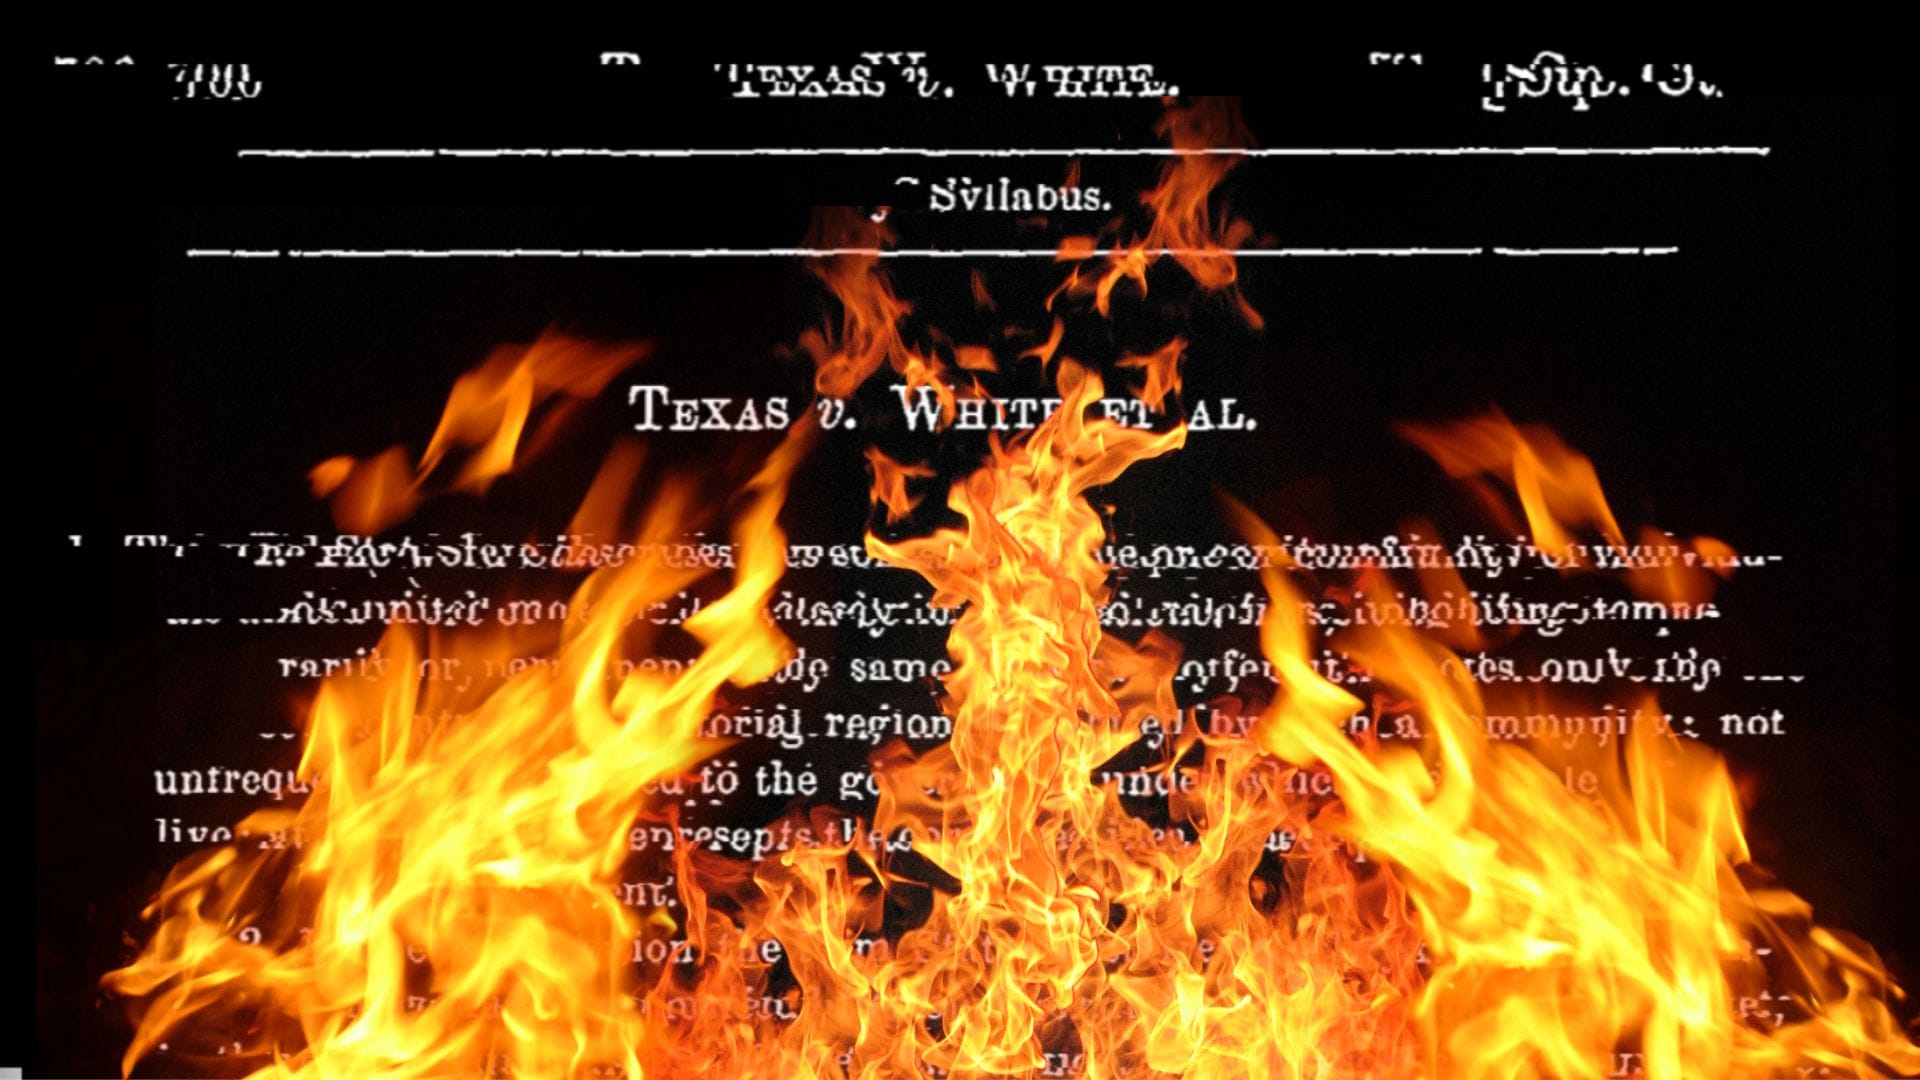 Texas vs. White